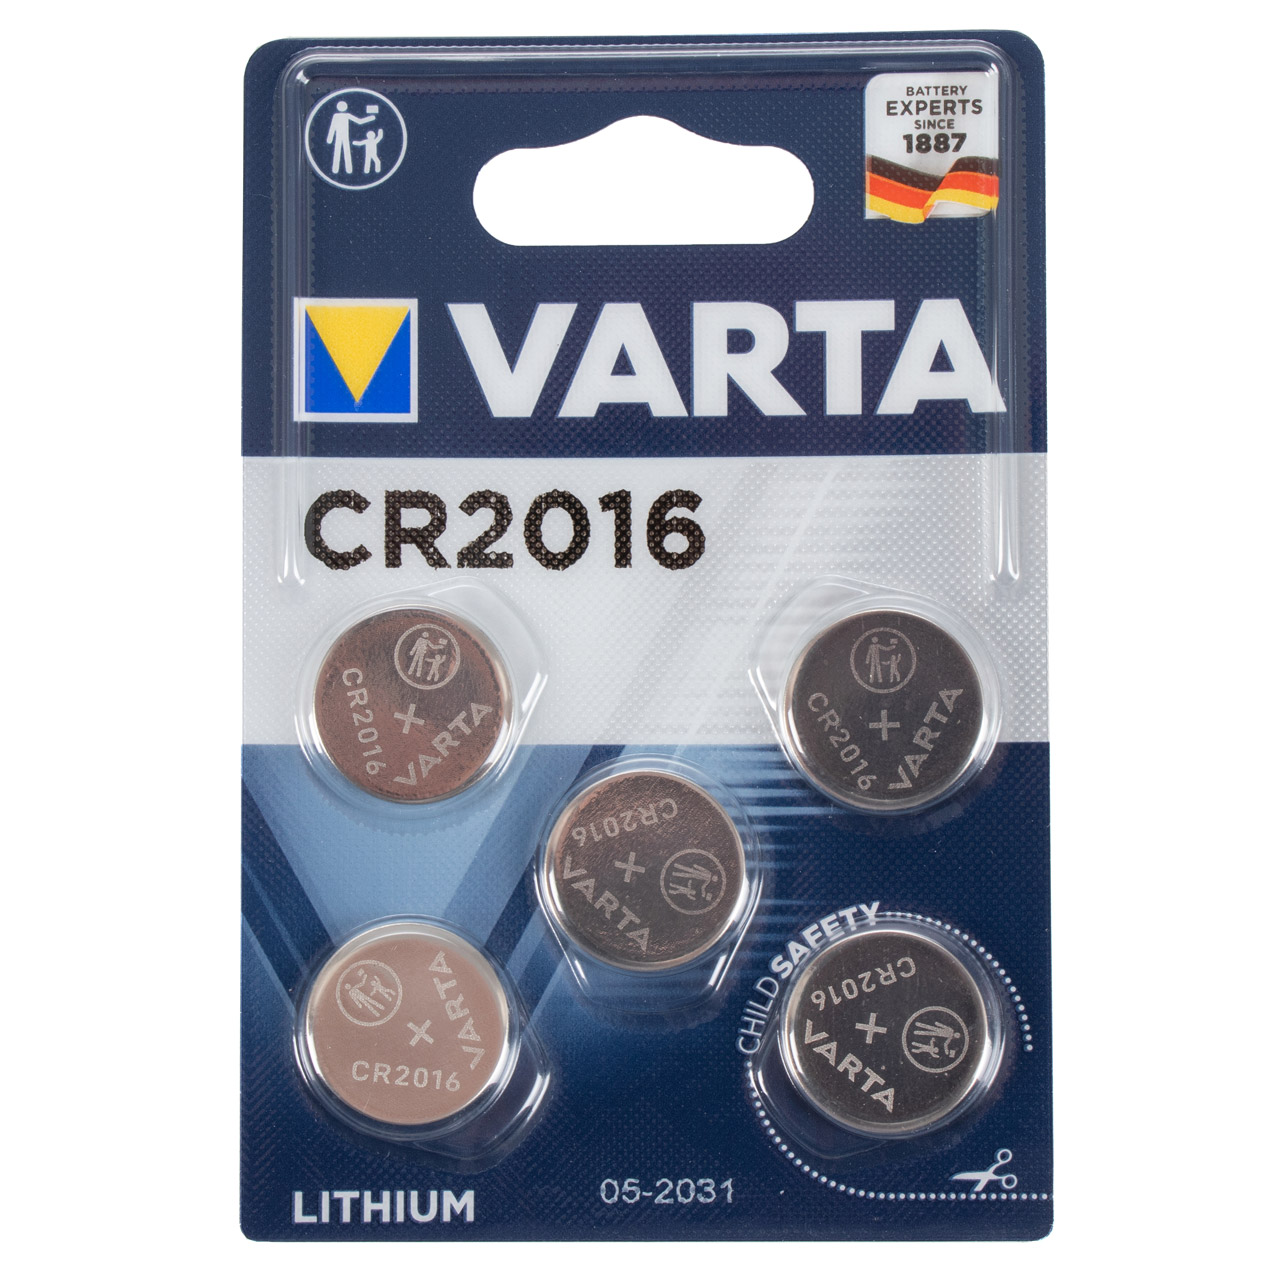 5x VARTA Lithium 3V CR2016 Knopfzelle Knopfbatterie Batterie (MHD 07.2031)